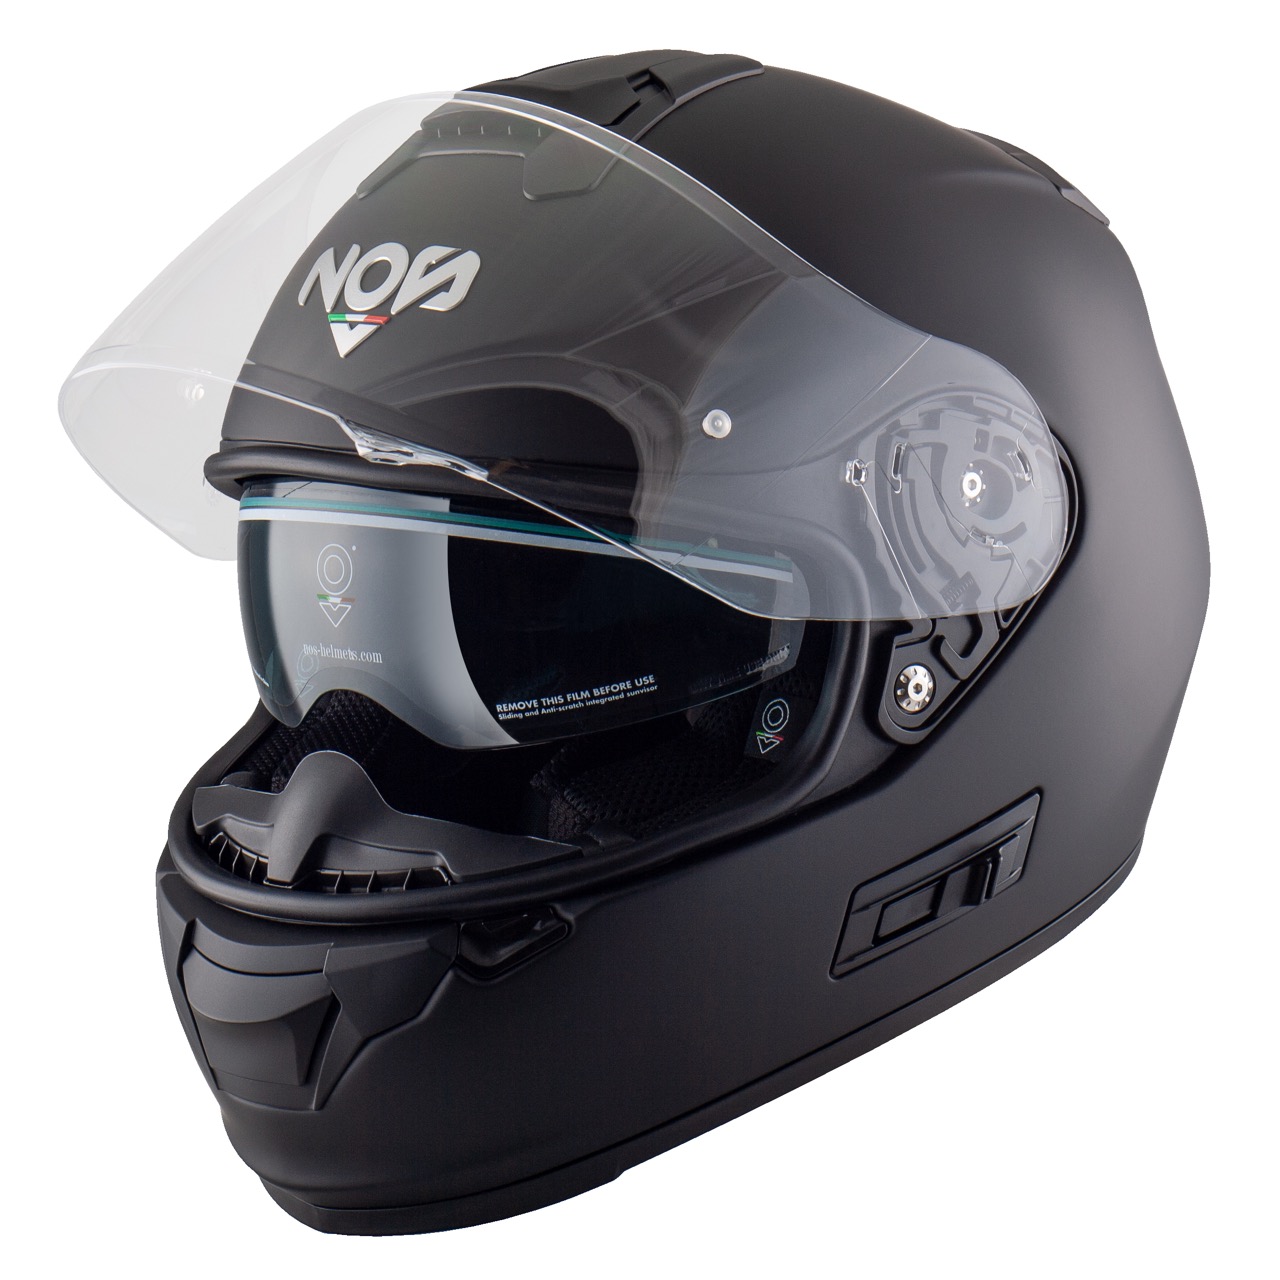 NOS NS-7F Black Matt: un casco protettivo con un aspetto grintoso